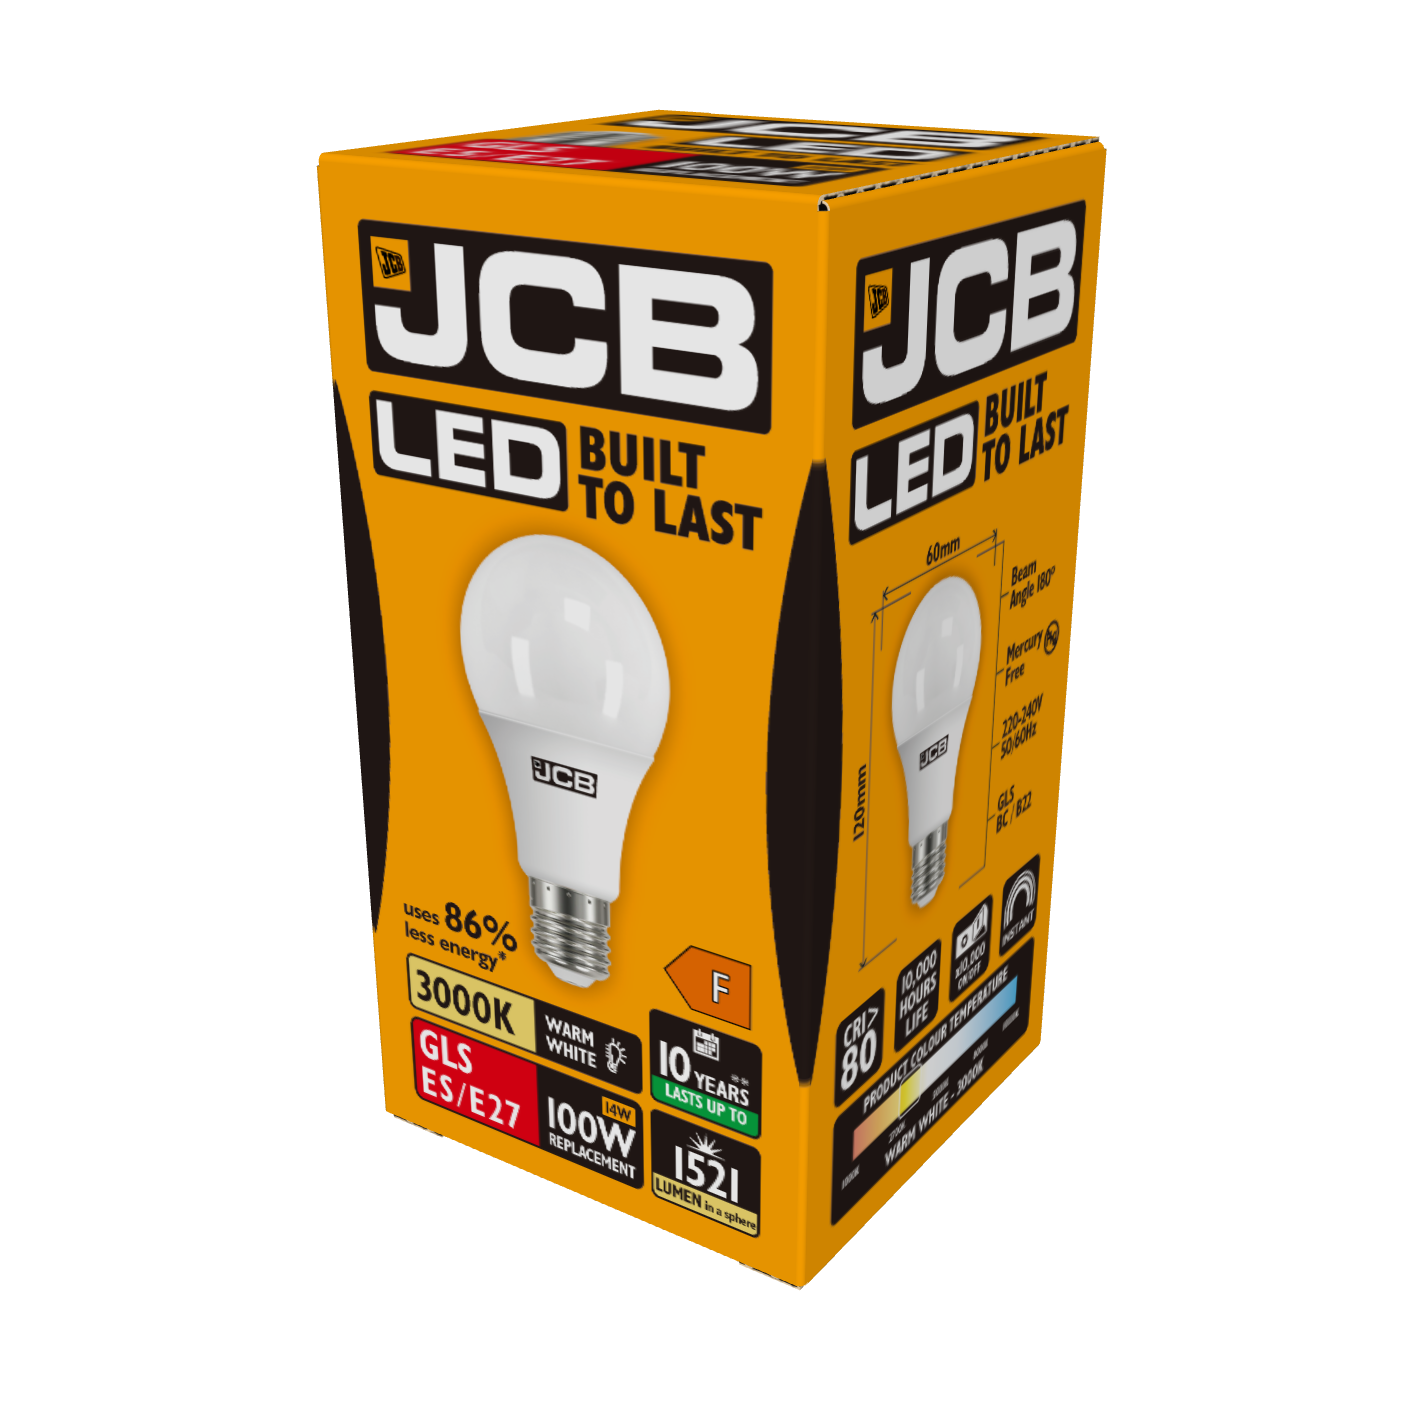 JCB LED GLS E27 (ES) 1,521lm 14W 3,000K (Warm White), Box of 1